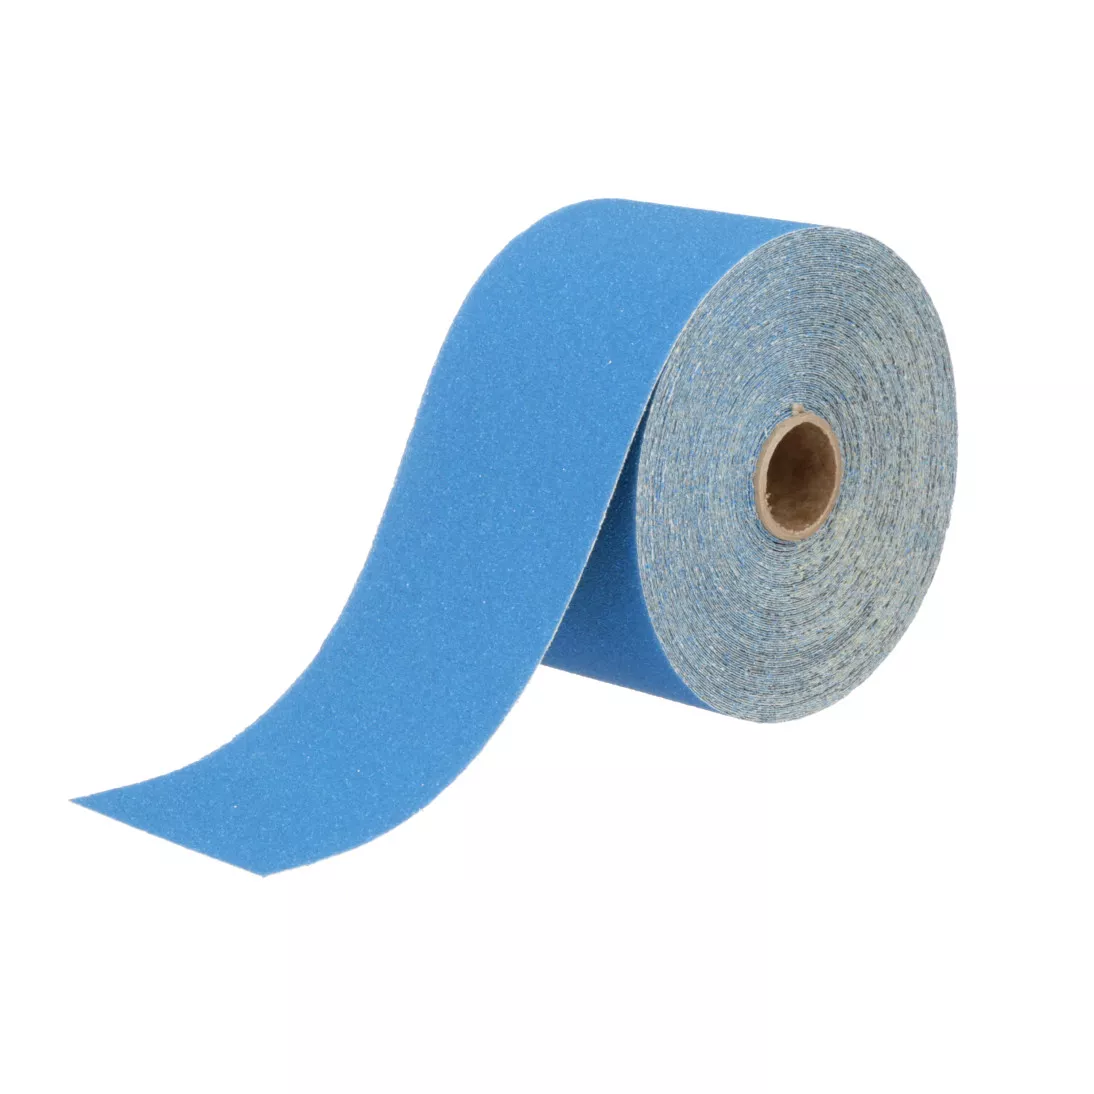 3M™ Stikit™ Blue Abrasive Sheet Roll, 36217, 80, 2-3/4 in x 20 yd, 5
rolls per case